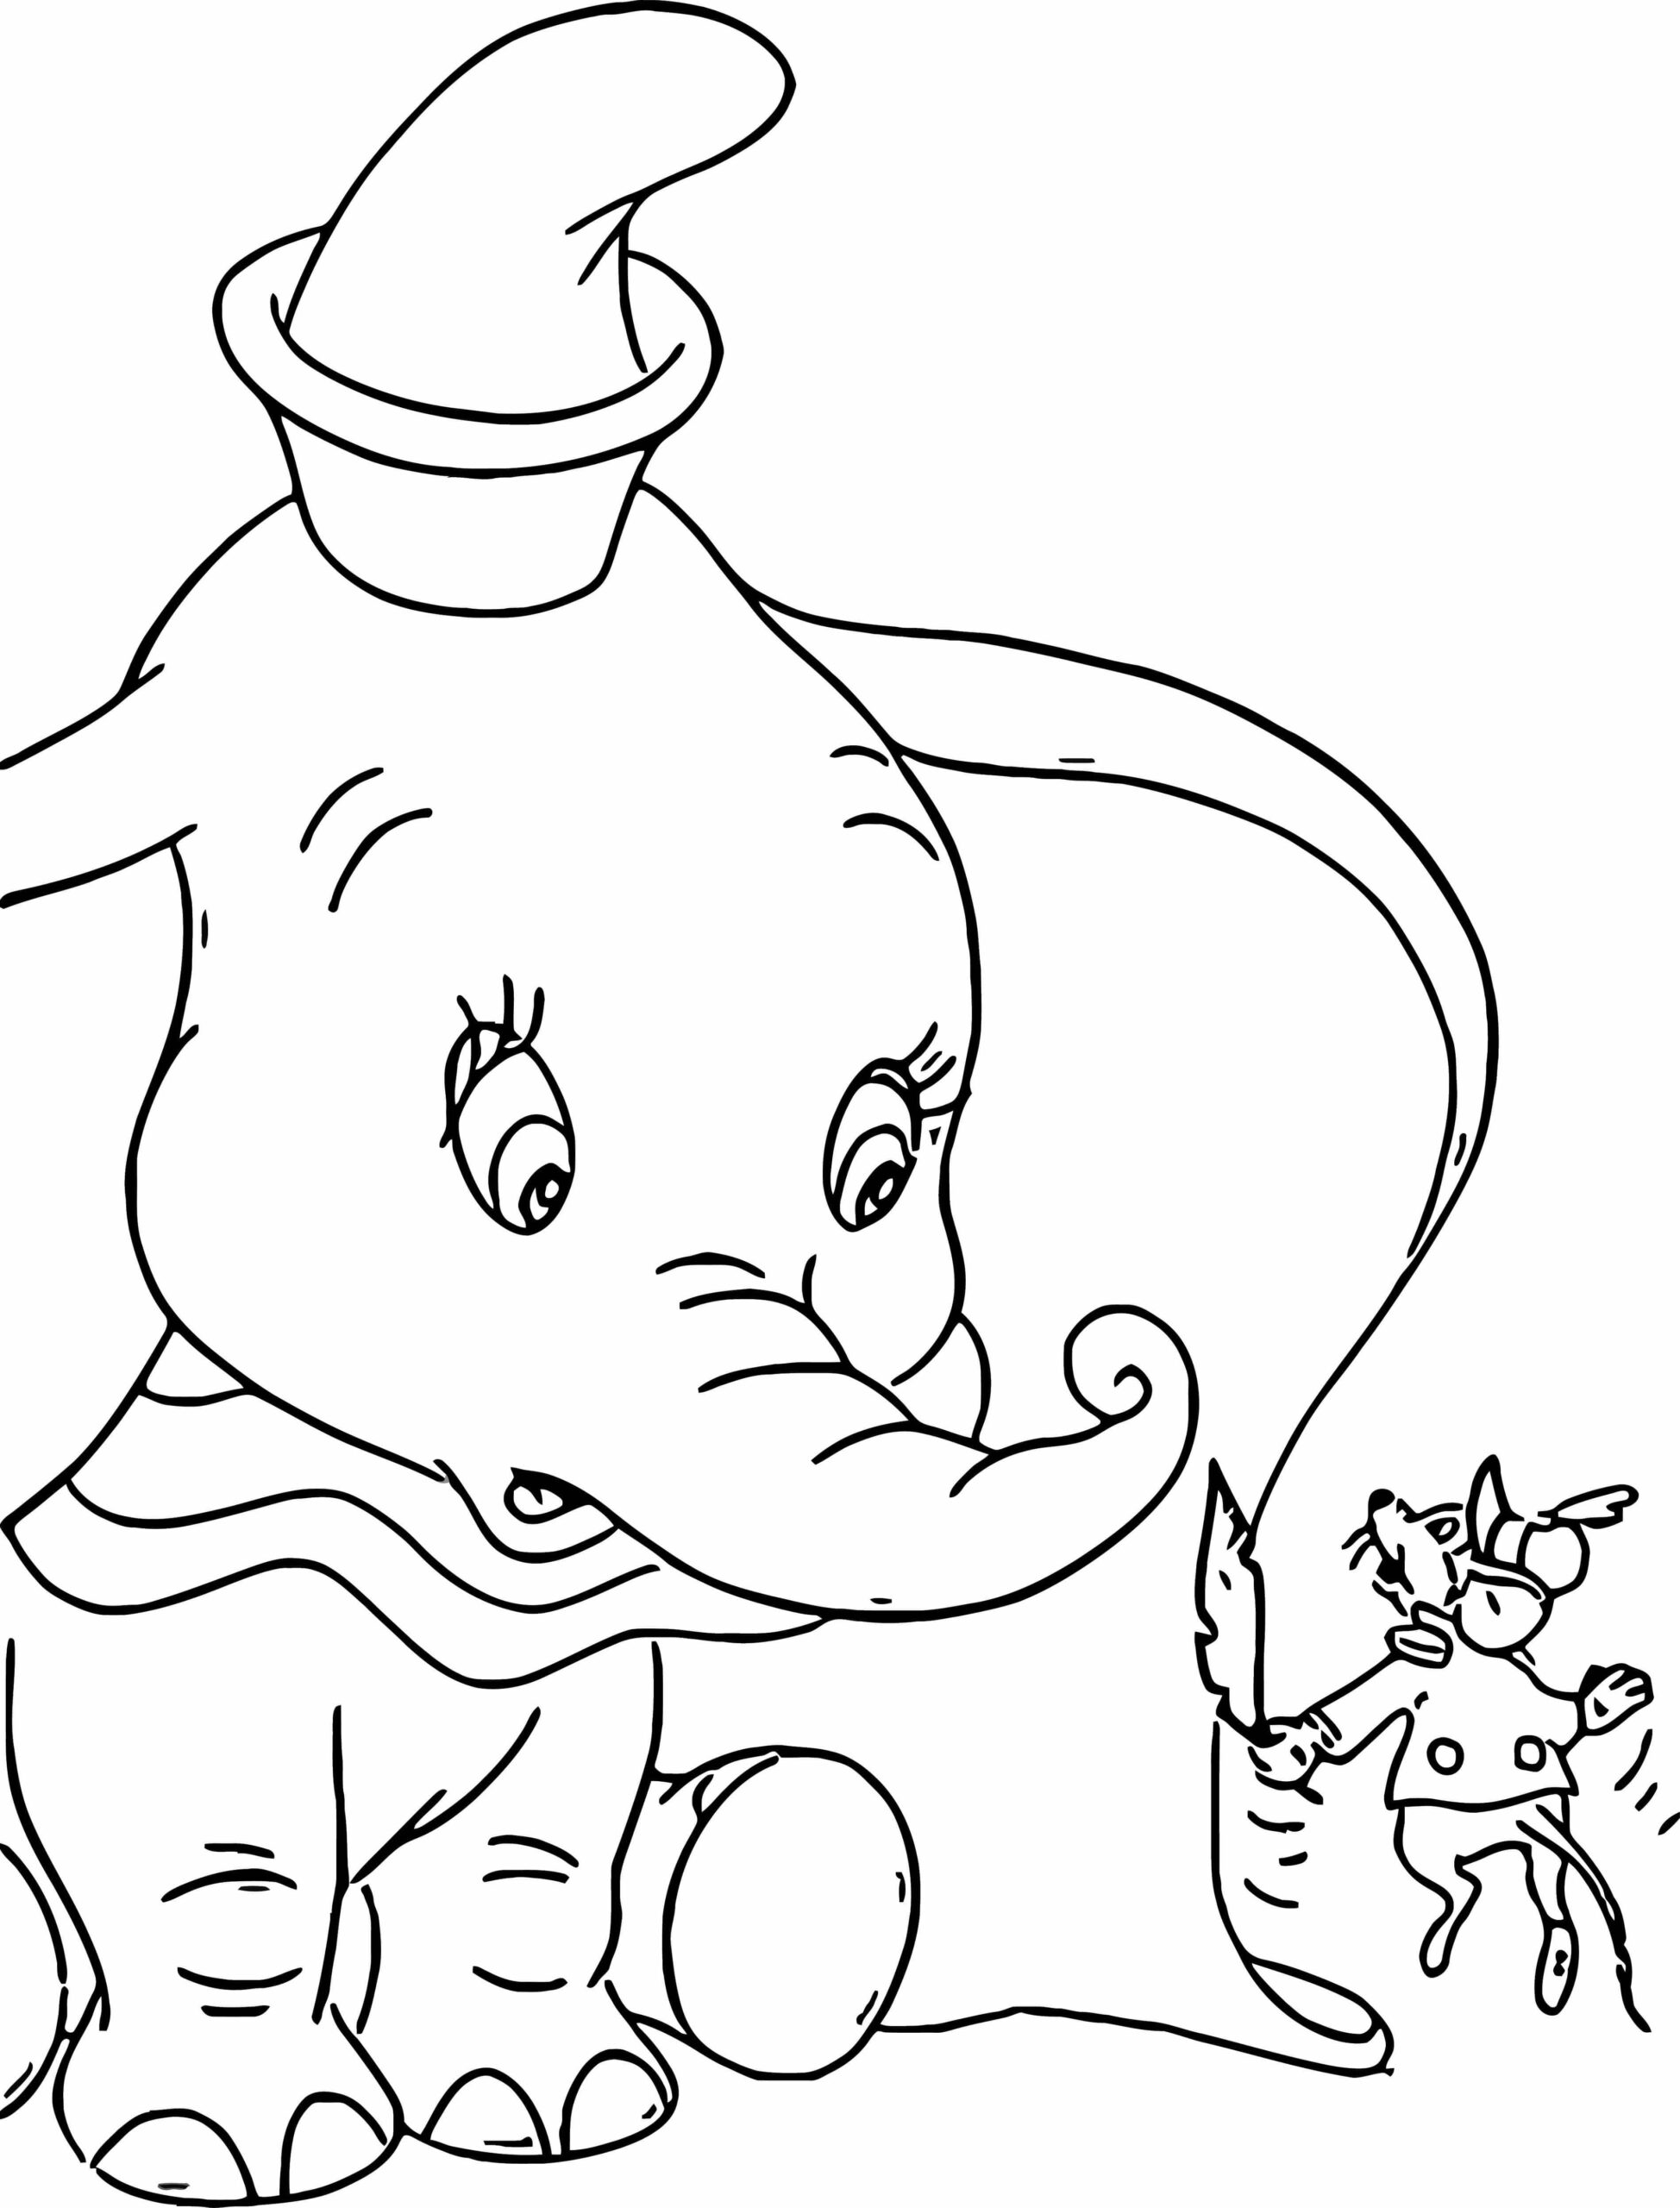 Dibujos de A Sly Timothy se le Ocurre un Plan para Convertir a Dumbo En La Estrella Del Circo para colorear